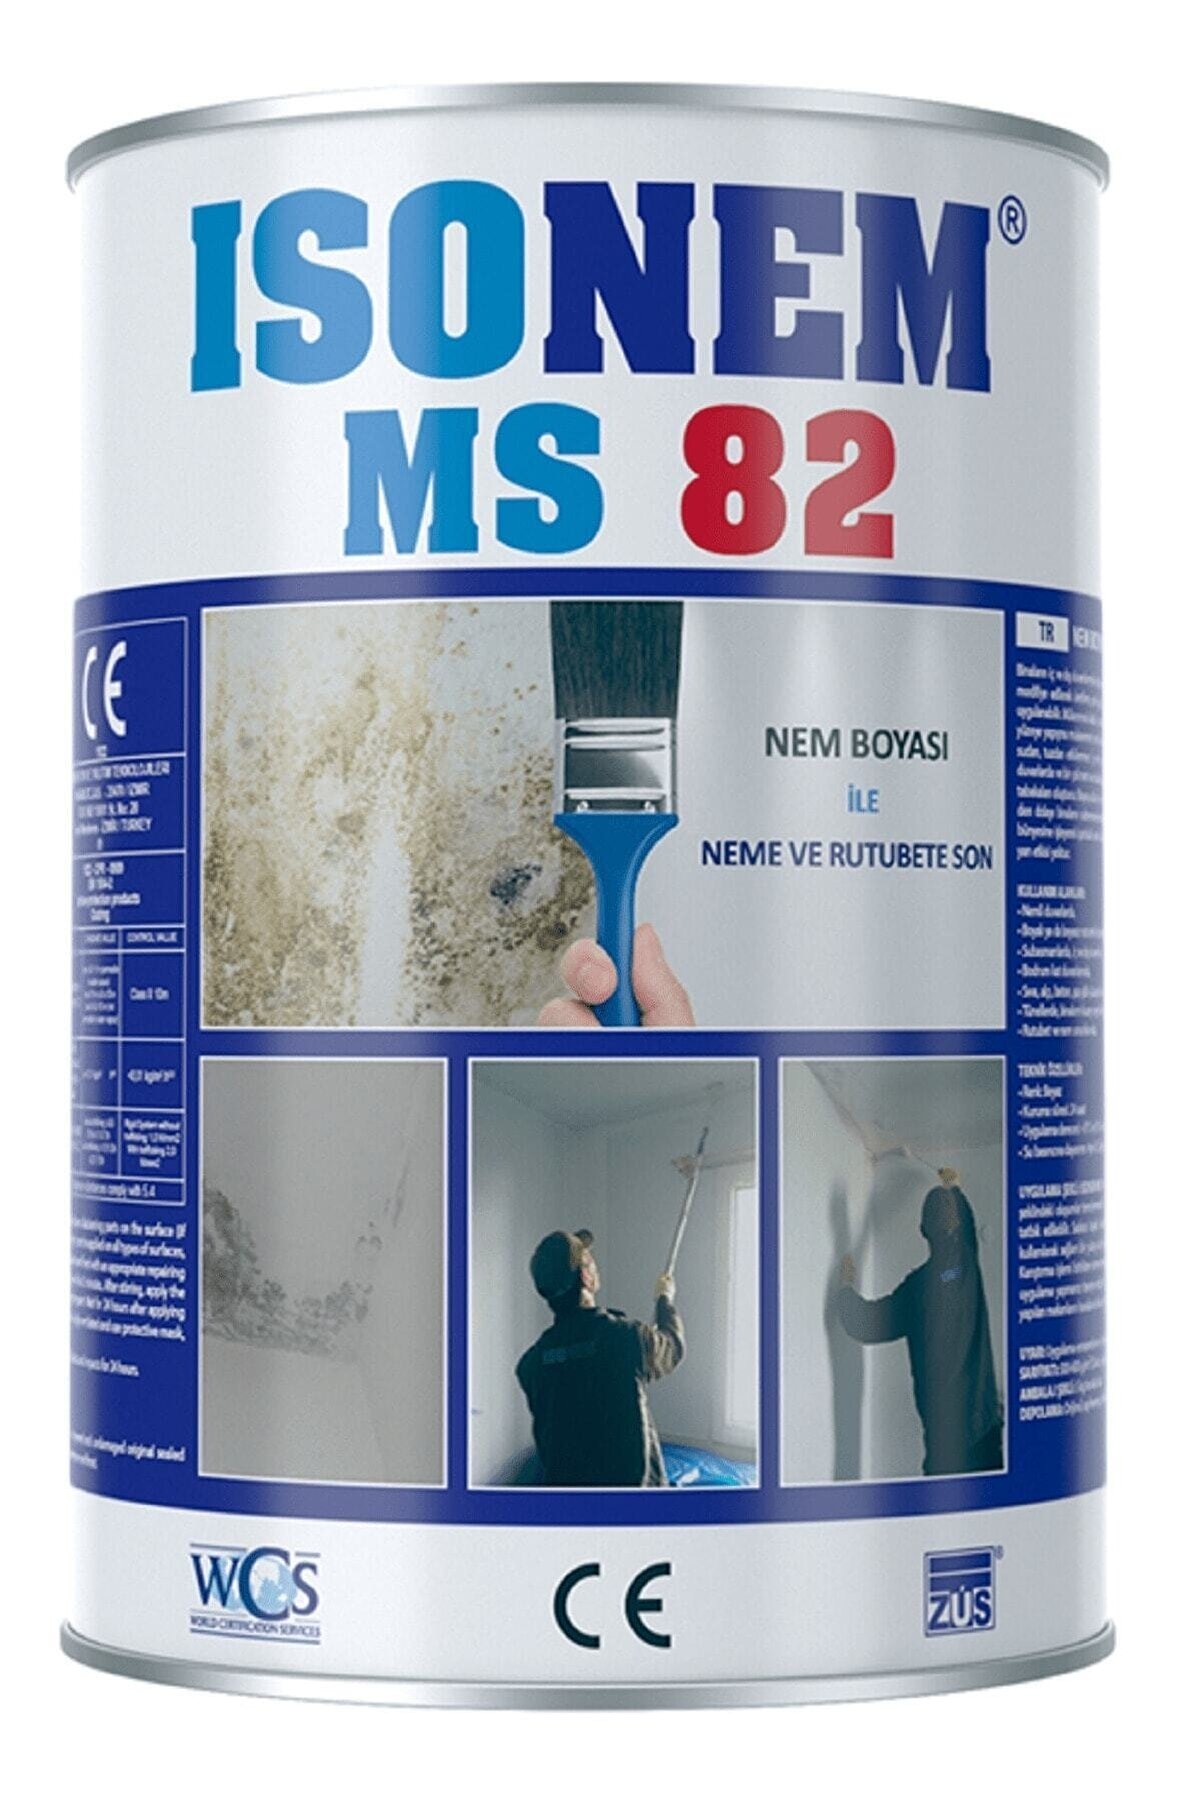 Isonem Ms 82 Rutubet Ve Nem Boyası 5 Kg